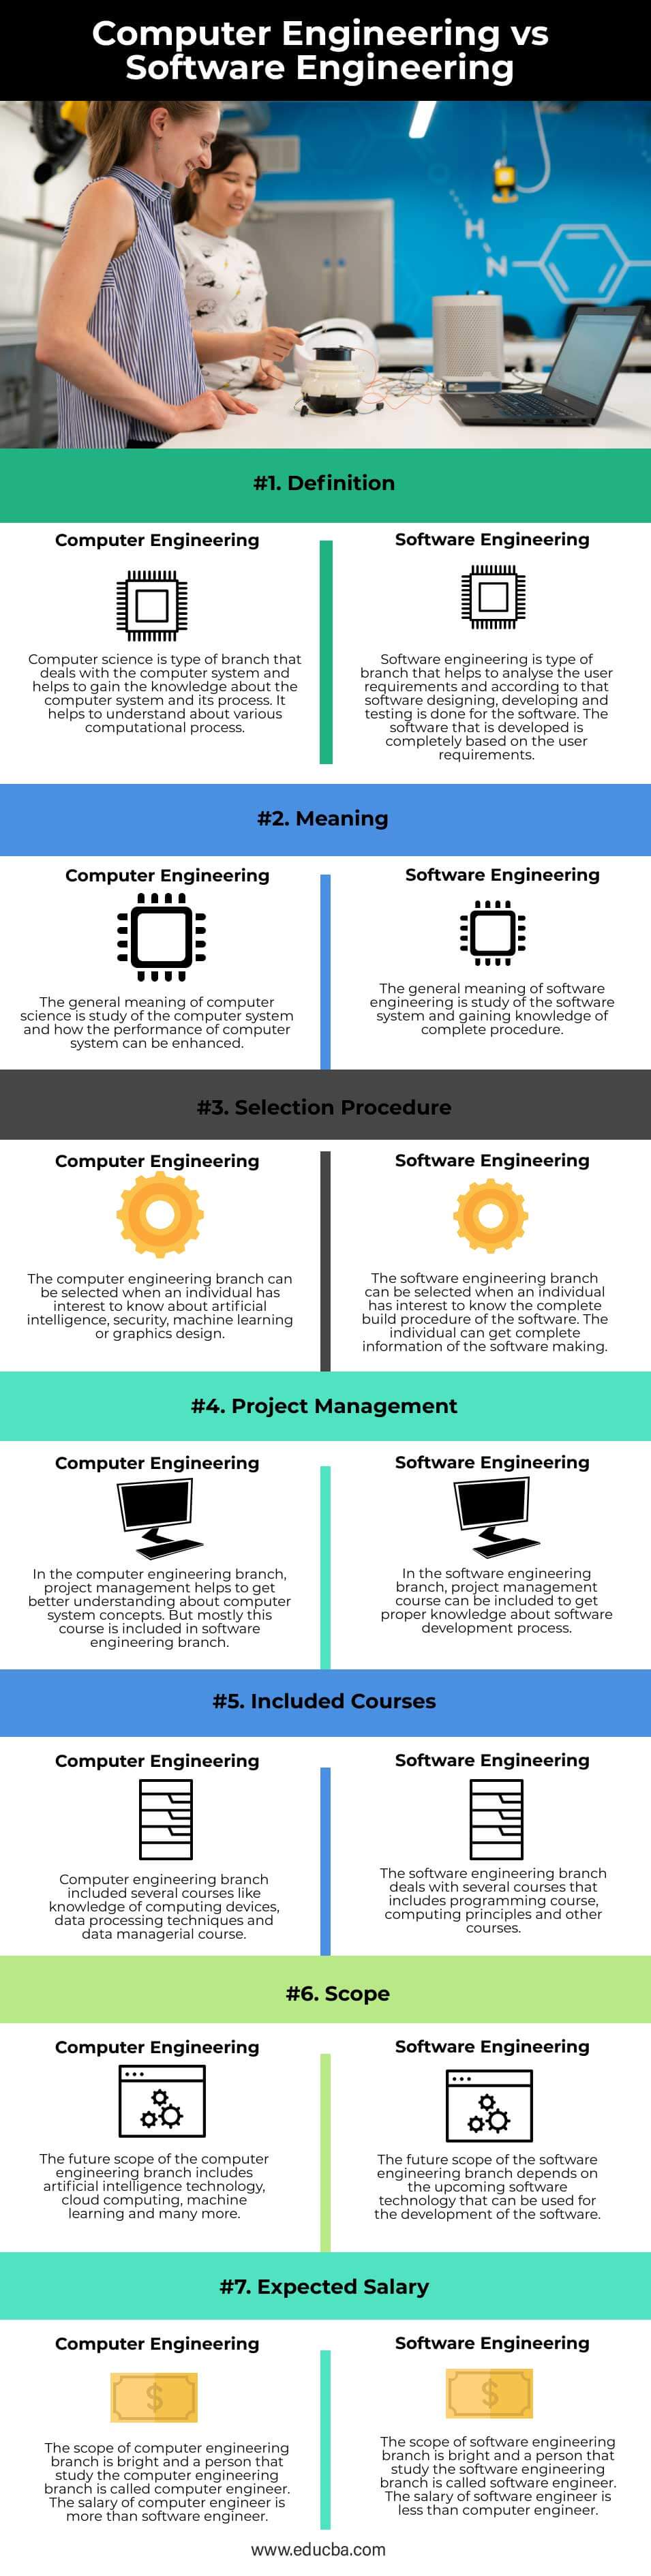 Computer Engineering vs Software Engineering-info